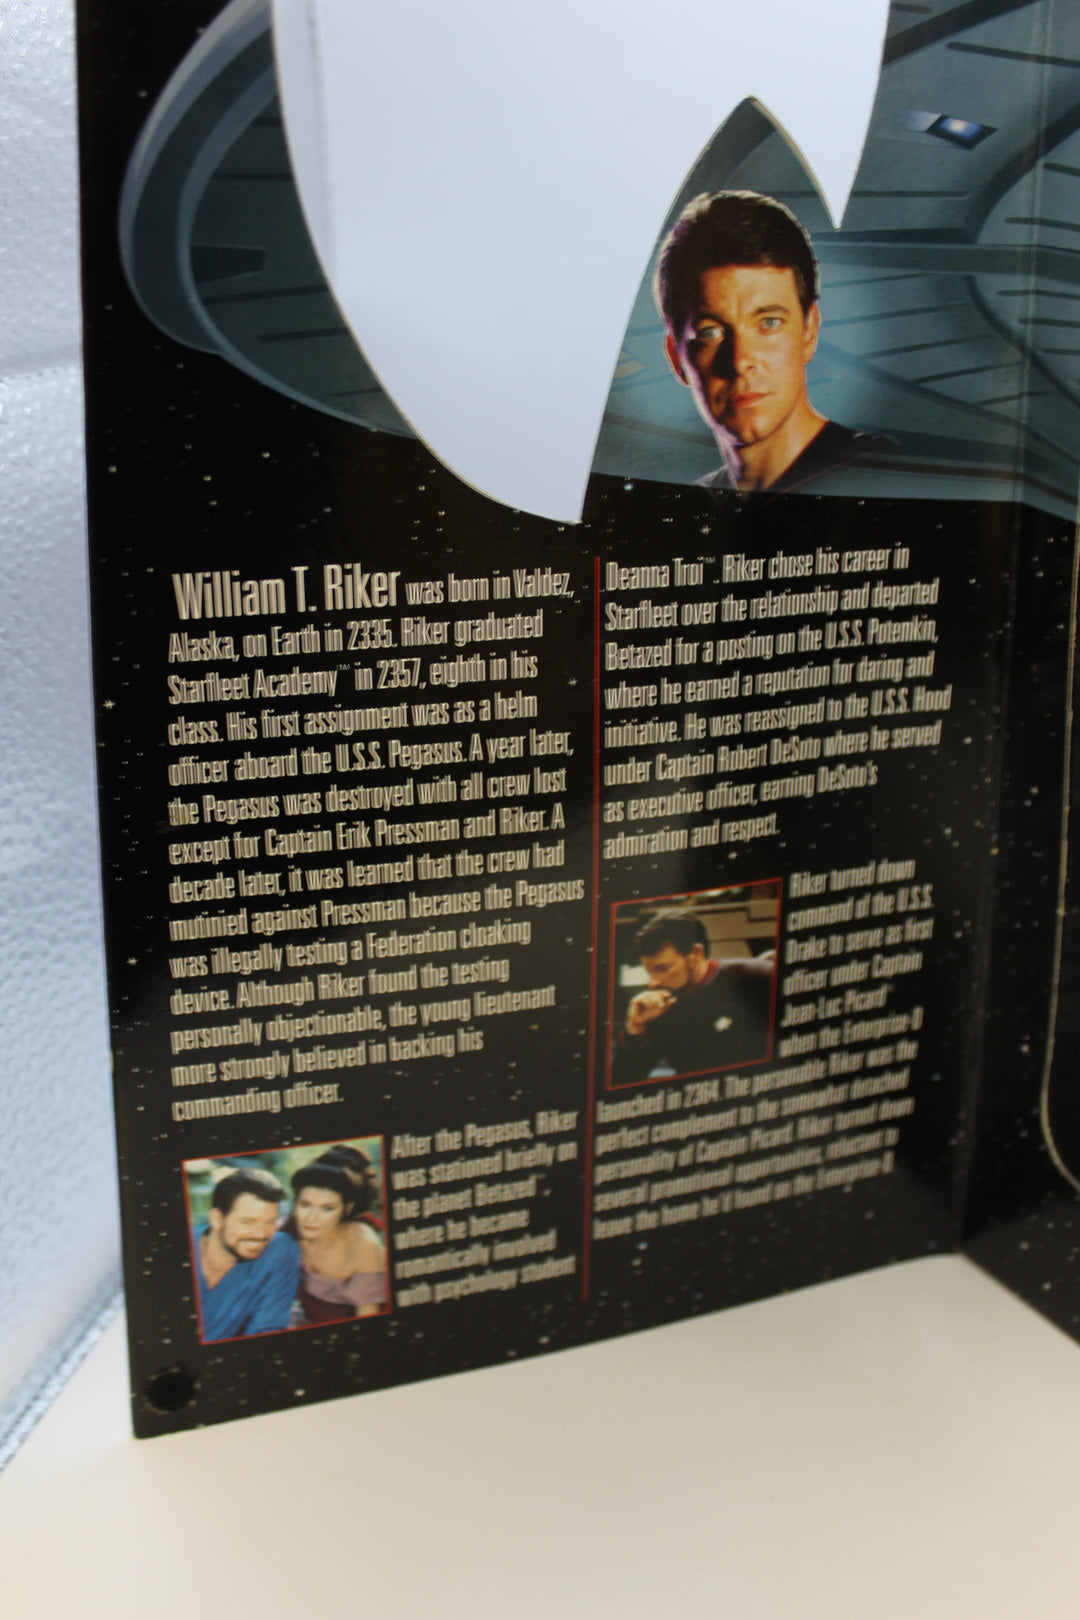 1998 Star Trek Insurrection Commander Williams Riker Figure